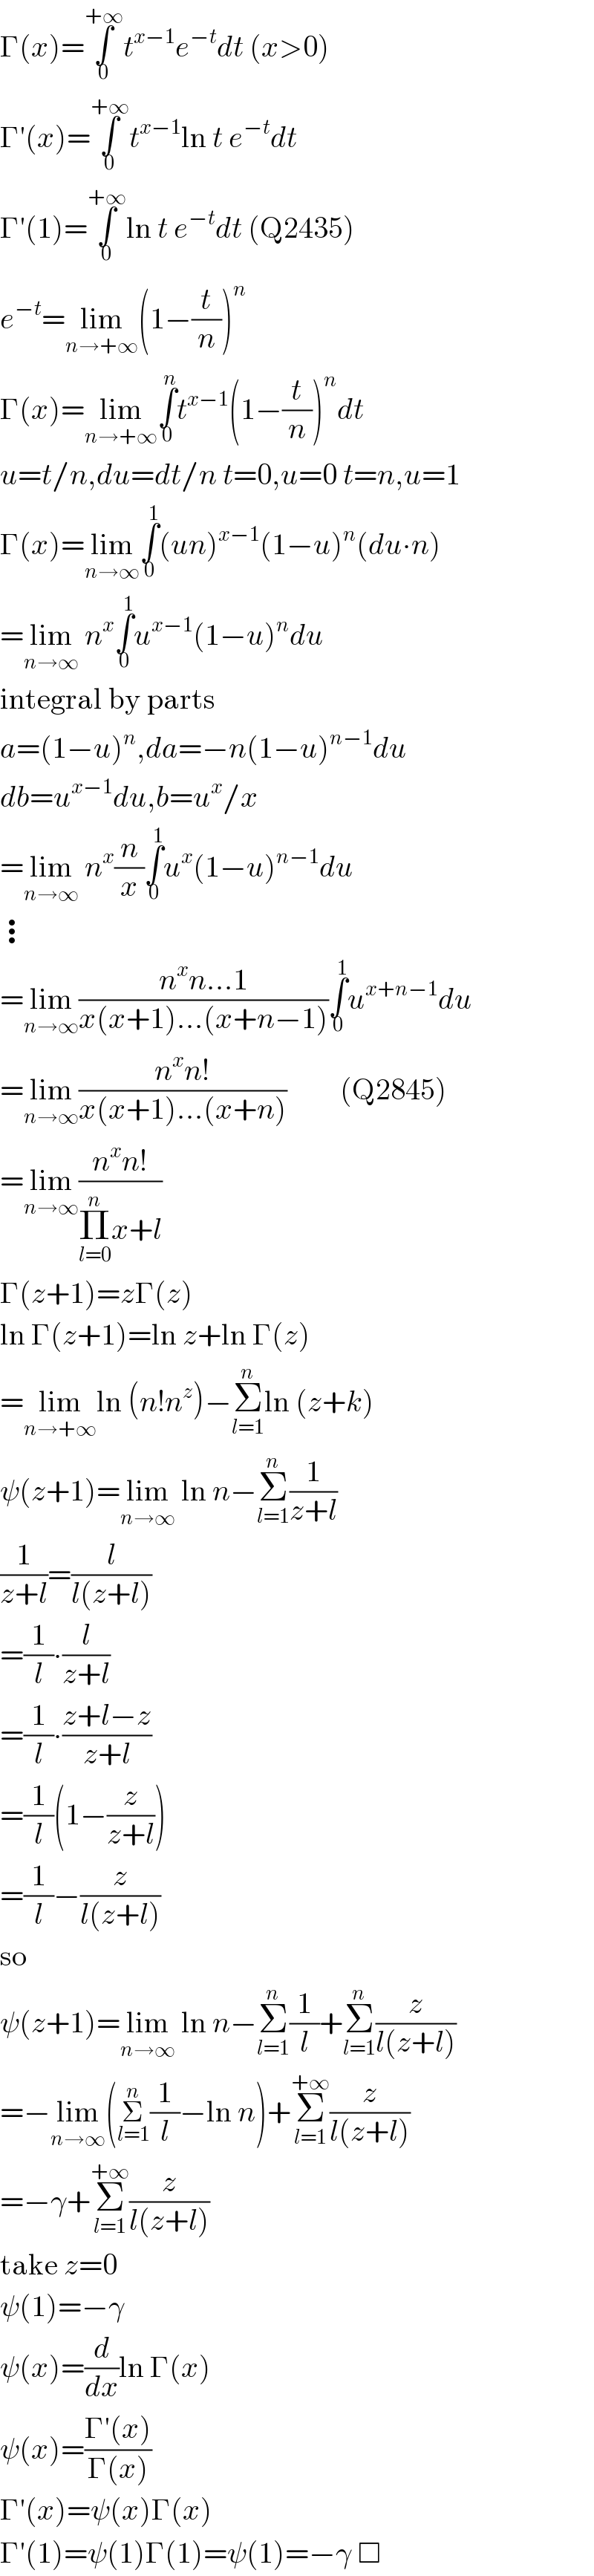 Γ(x)=∫_0 ^(+∞) t^(x−1) e^(−t) dt (x>0)  Γ′(x)=∫_0 ^(+∞) t^(x−1) ln t e^(−t) dt  Γ′(1)=∫_0 ^(+∞) ln t e^(−t) dt (Q2435)  e^(−t) =lim_(n→+∞) (1−(t/n))^n   Γ(x)=lim_(n→+∞) ∫_0 ^n t^(x−1) (1−(t/n))^n dt  u=t/n,du=dt/n t=0,u=0 t=n,u=1  Γ(x)=lim_(n→∞) ∫_0 ^1 (un)^(x−1) (1−u)^n (du∙n)  =lim_(n→∞)  n^x ∫_0 ^1 u^(x−1) (1−u)^n du  integral by parts  a=(1−u)^n ,da=−n(1−u)^(n−1) du  db=u^(x−1) du,b=u^x /x  =lim_(n→∞)  n^x (n/x)∫_0 ^1 u^x (1−u)^(n−1) du  ⋮  =lim_(n→∞) ((n^x n...1)/(x(x+1)...(x+n−1)))∫_0 ^1 u^(x+n−1) du  =lim_(n→∞) ((n^x n!)/(x(x+1)...(x+n)))         (Q2845)  =lim_(n→∞) ((n^x n!)/(Π_(l=0) ^n x+l))  Γ(z+1)=zΓ(z)  ln Γ(z+1)=ln z+ln Γ(z)  =lim_(n→+∞) ln (n!n^z )−Σ_(l=1) ^n ln (z+k)  ψ(z+1)=lim_(n→∞)  ln n−Σ_(l=1) ^n (1/(z+l))  (1/(z+l))=(l/(l(z+l)))  =(1/l)∙(l/(z+l))  =(1/l)∙((z+l−z)/(z+l))  =(1/l)(1−(z/(z+l)))  =(1/l)−(z/(l(z+l)))  so  ψ(z+1)=lim_(n→∞)  ln n−Σ_(l=1) ^n (1/l)+Σ_(l=1) ^n (z/(l(z+l)))  =−lim_(n→∞) (Σ_(l=1) ^n (1/l)−ln n)+Σ_(l=1) ^(+∞) (z/(l(z+l)))  =−γ+Σ_(l=1) ^(+∞) (z/(l(z+l)))  take z=0  ψ(1)=−γ  ψ(x)=(d/dx)ln Γ(x)  ψ(x)=((Γ′(x))/(Γ(x)))  Γ′(x)=ψ(x)Γ(x)  Γ′(1)=ψ(1)Γ(1)=ψ(1)=−γ □  